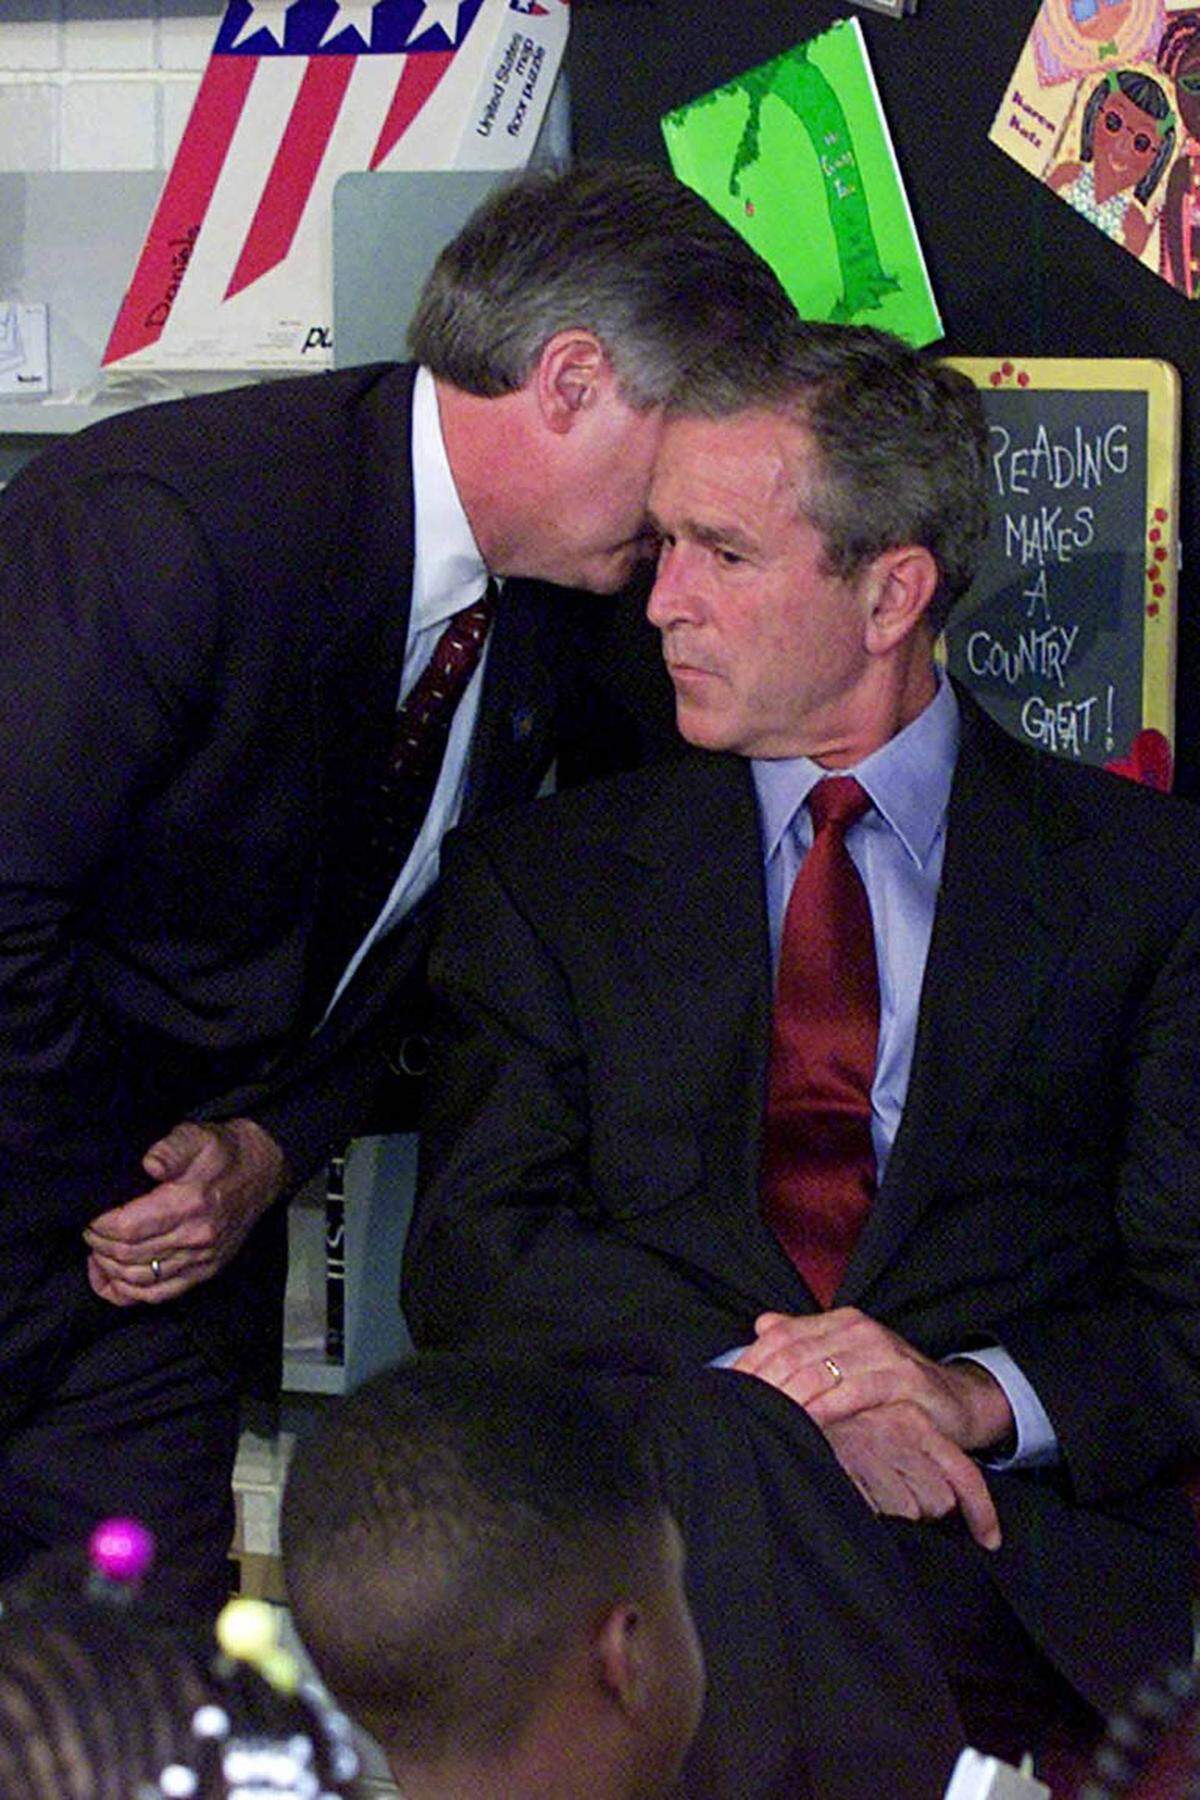 "Ein zweites Flugzeug hat den zweiten Turm getroffen. Amerika wird angegriffen." Andrew Card, Stabschef des Weißen Hauses, informiert Präsident George W. Bush während dessen Besuch in einer Volksschule in Florida.